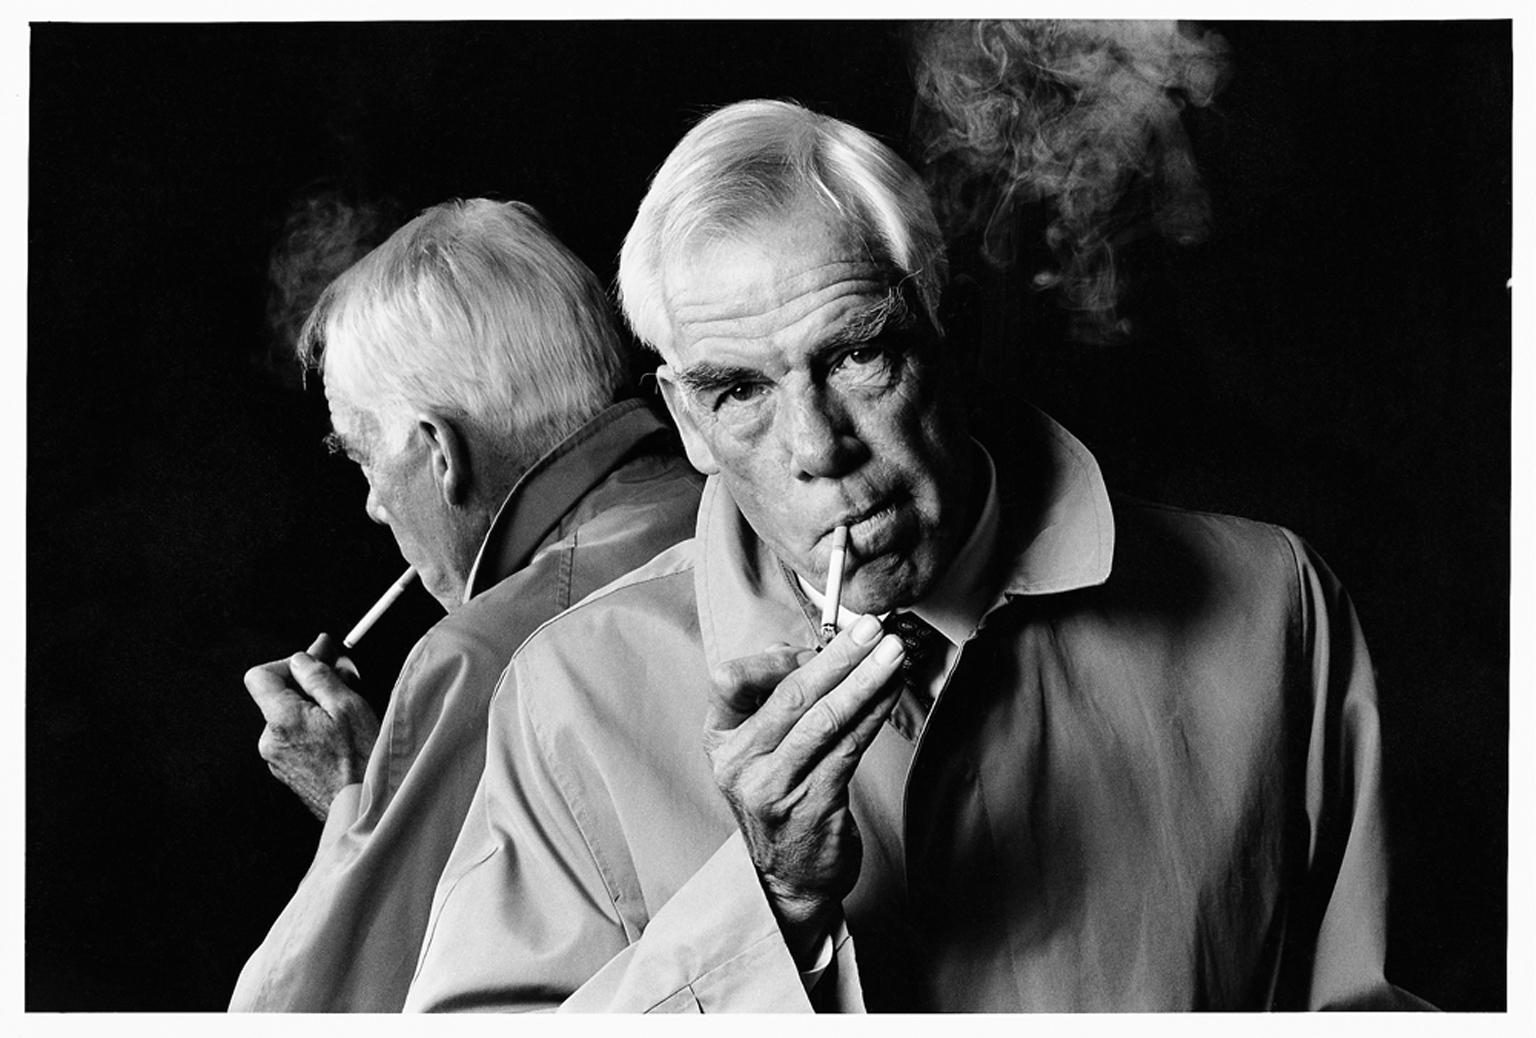 David Steen Portrait Photograph – Lee Marvin – Fotografie des 20. Jahrhunderts, Wandernder Stern, Hollywood, Filme